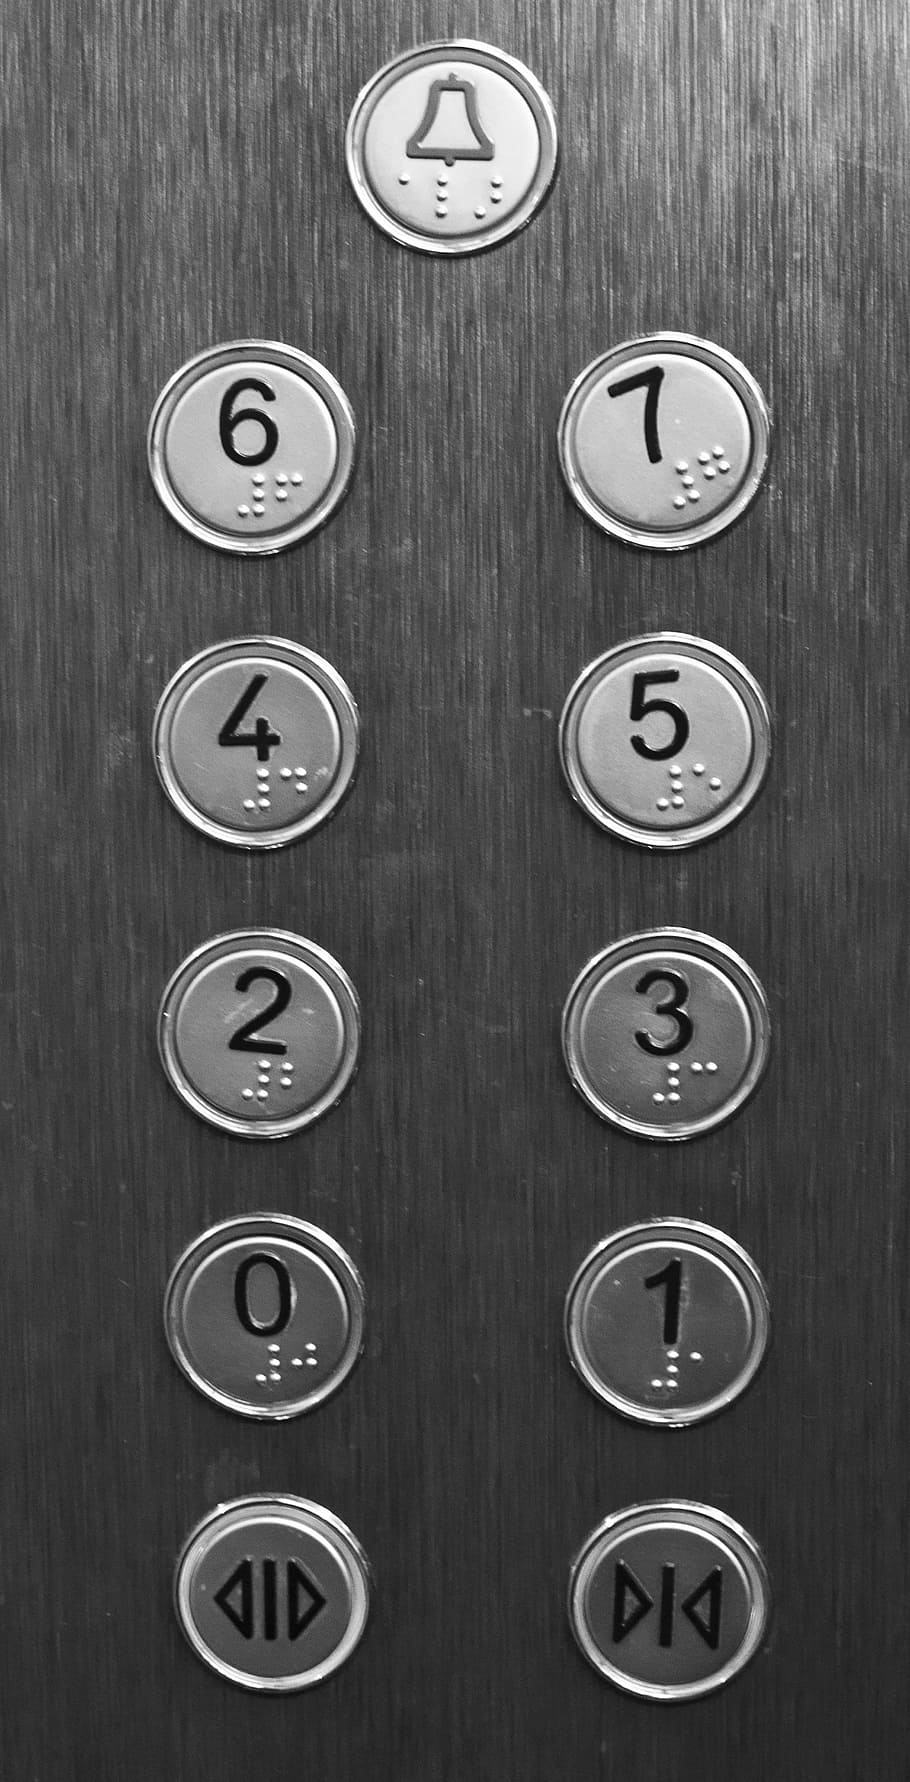 閉じる, ショット, 灰色, エレベーターボタン, エレベーター, ボタン, 建物, プッシュ, リフト, 床